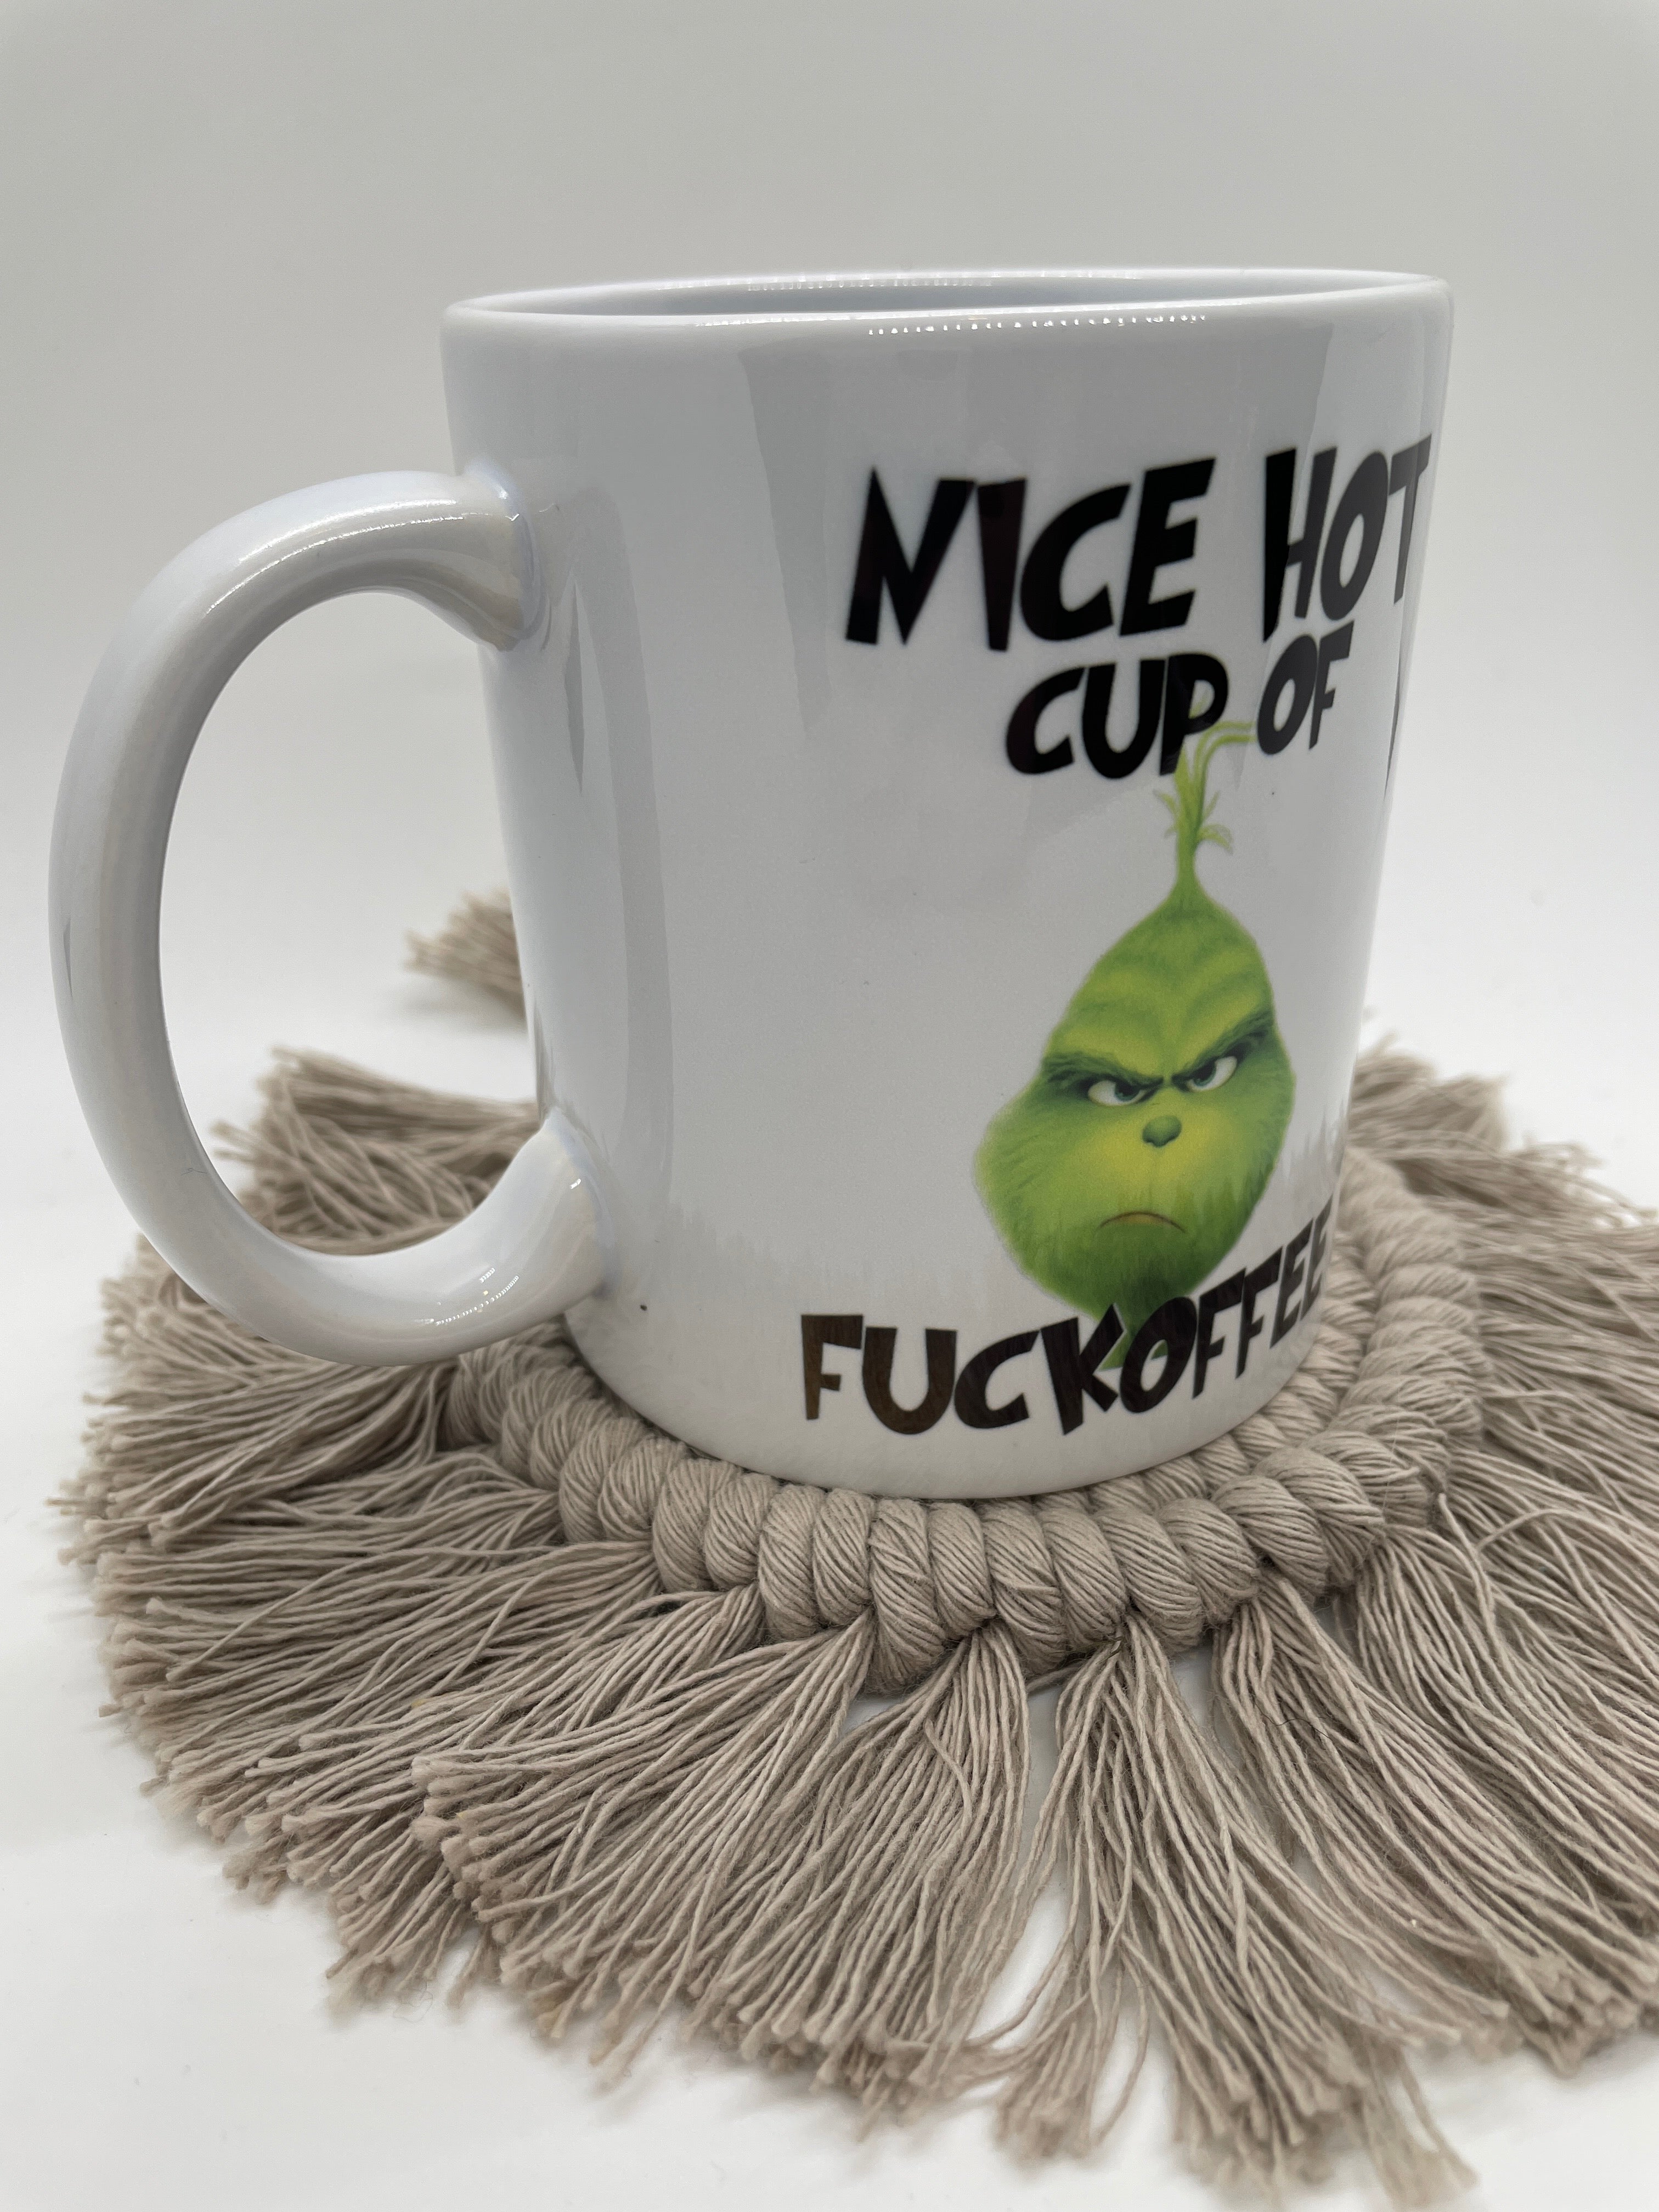 Nice Hot Cup Of Fuckoffee 11 oz mug SALE